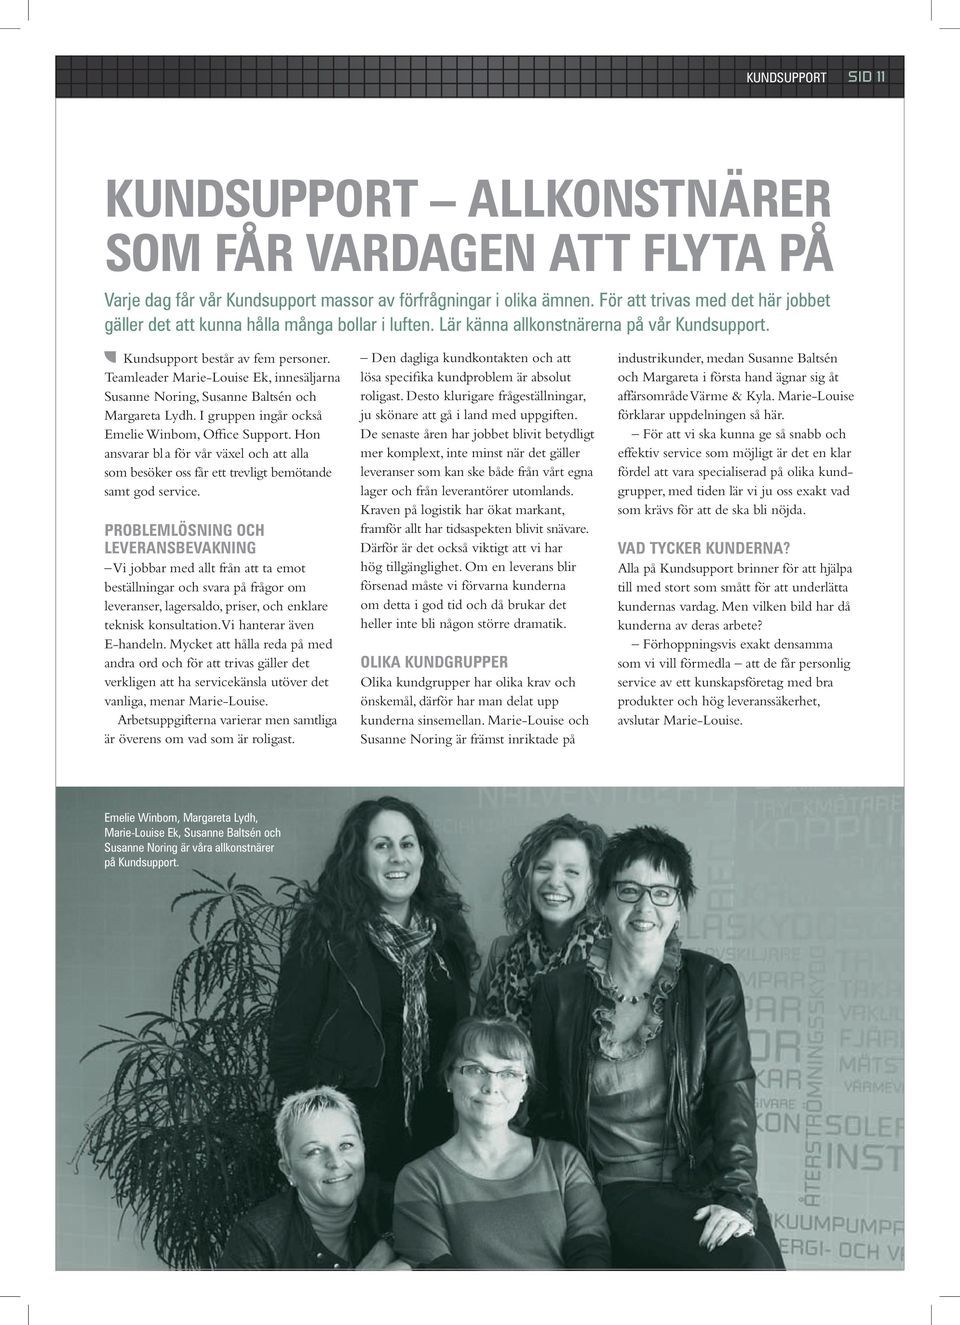 Teamleader Marie-Louise Ek, innesäljarna Susanne Noring, Susanne Baltsén och Margareta Lydh. I gruppen ingår också Emelie Winbom, Office Support.